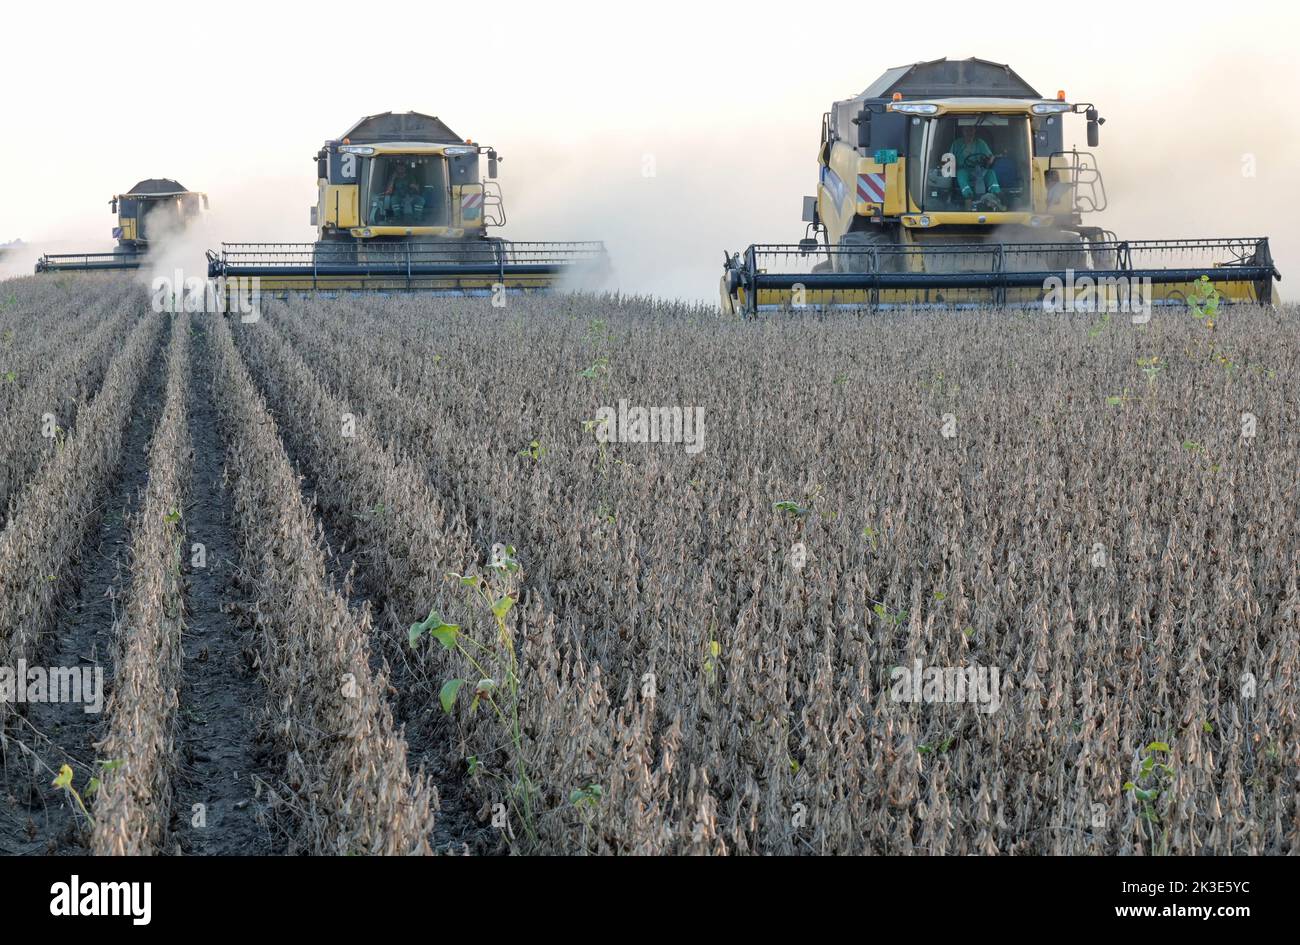 SERBIA, region Vojvodina, soybean harvest / SERBIEN, Region Vojvodina, Donau Soja Initiative, Soja Anbau zur Proteingewinnung in Europa, Soja Ernte Stock Photo